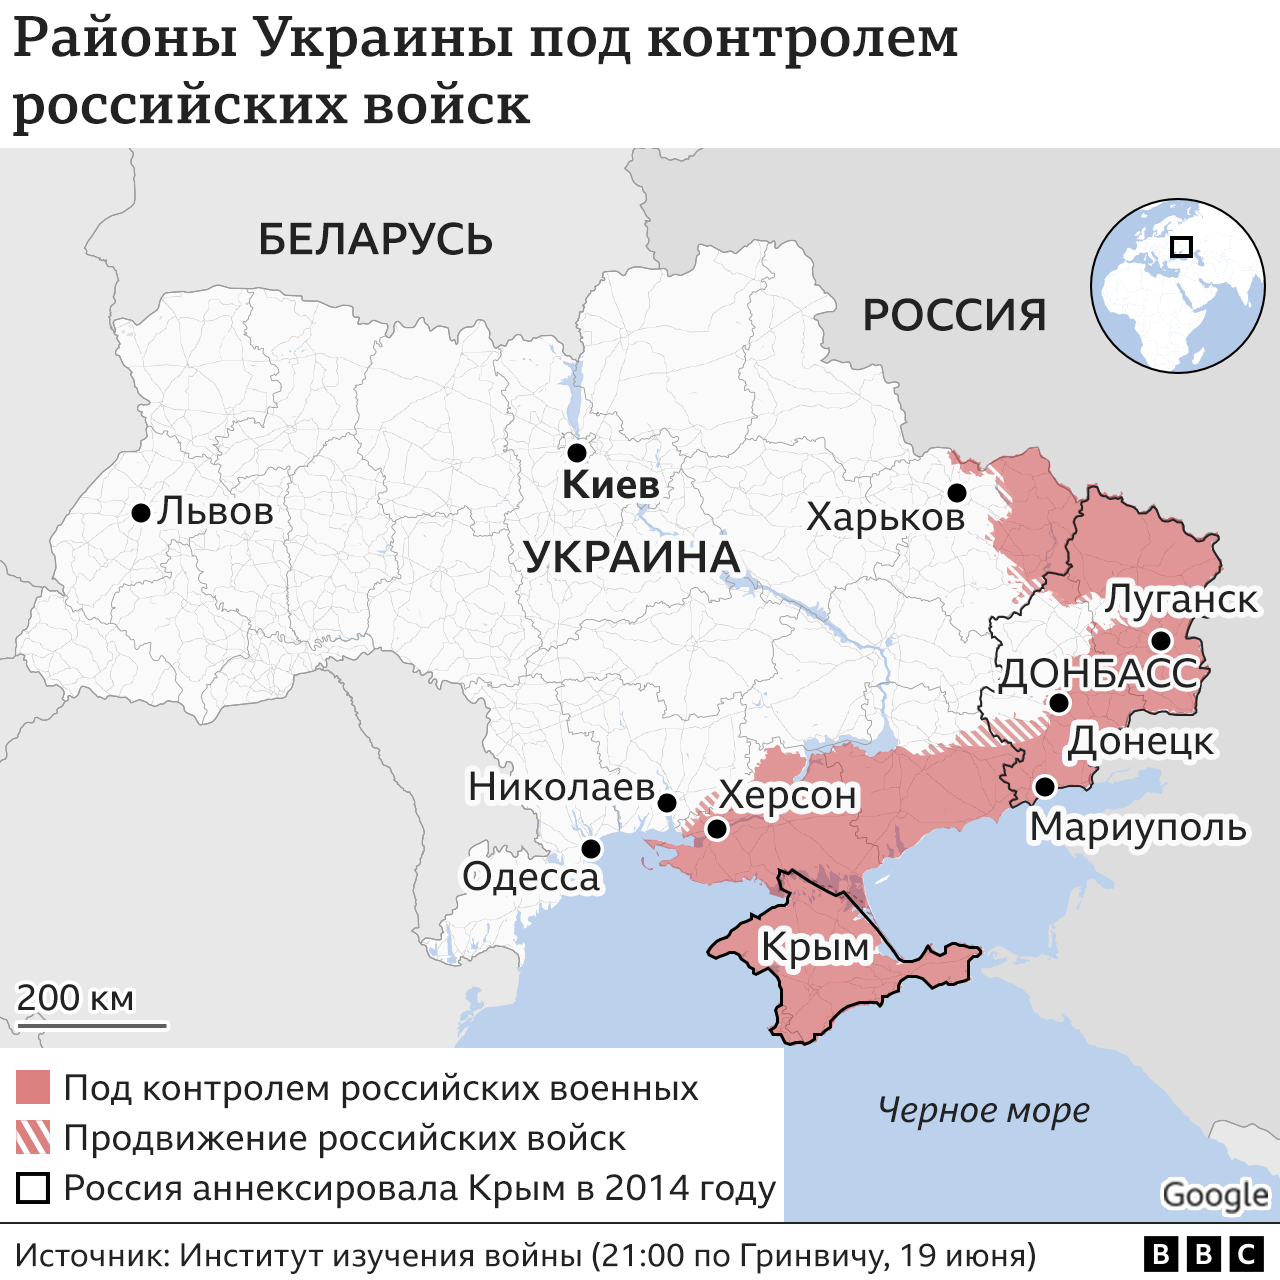 Четыре месяца войны. Чего добился Путин и чего добилась Украина - BBC NewsРусская служба